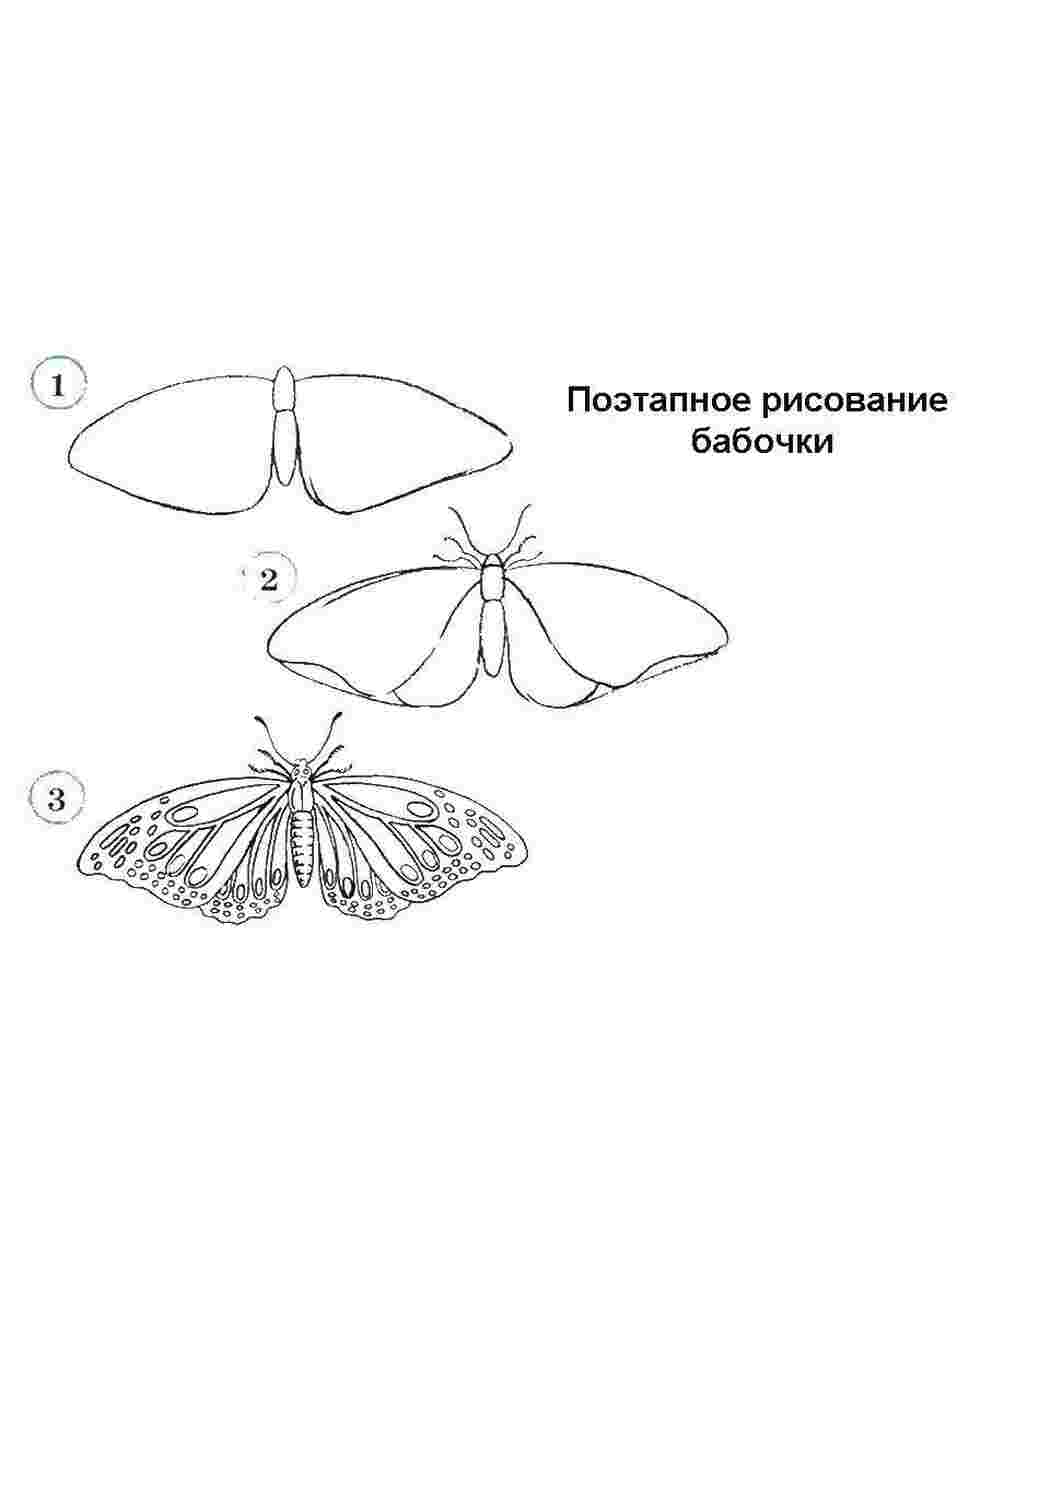 Схематический рисунок бабочки